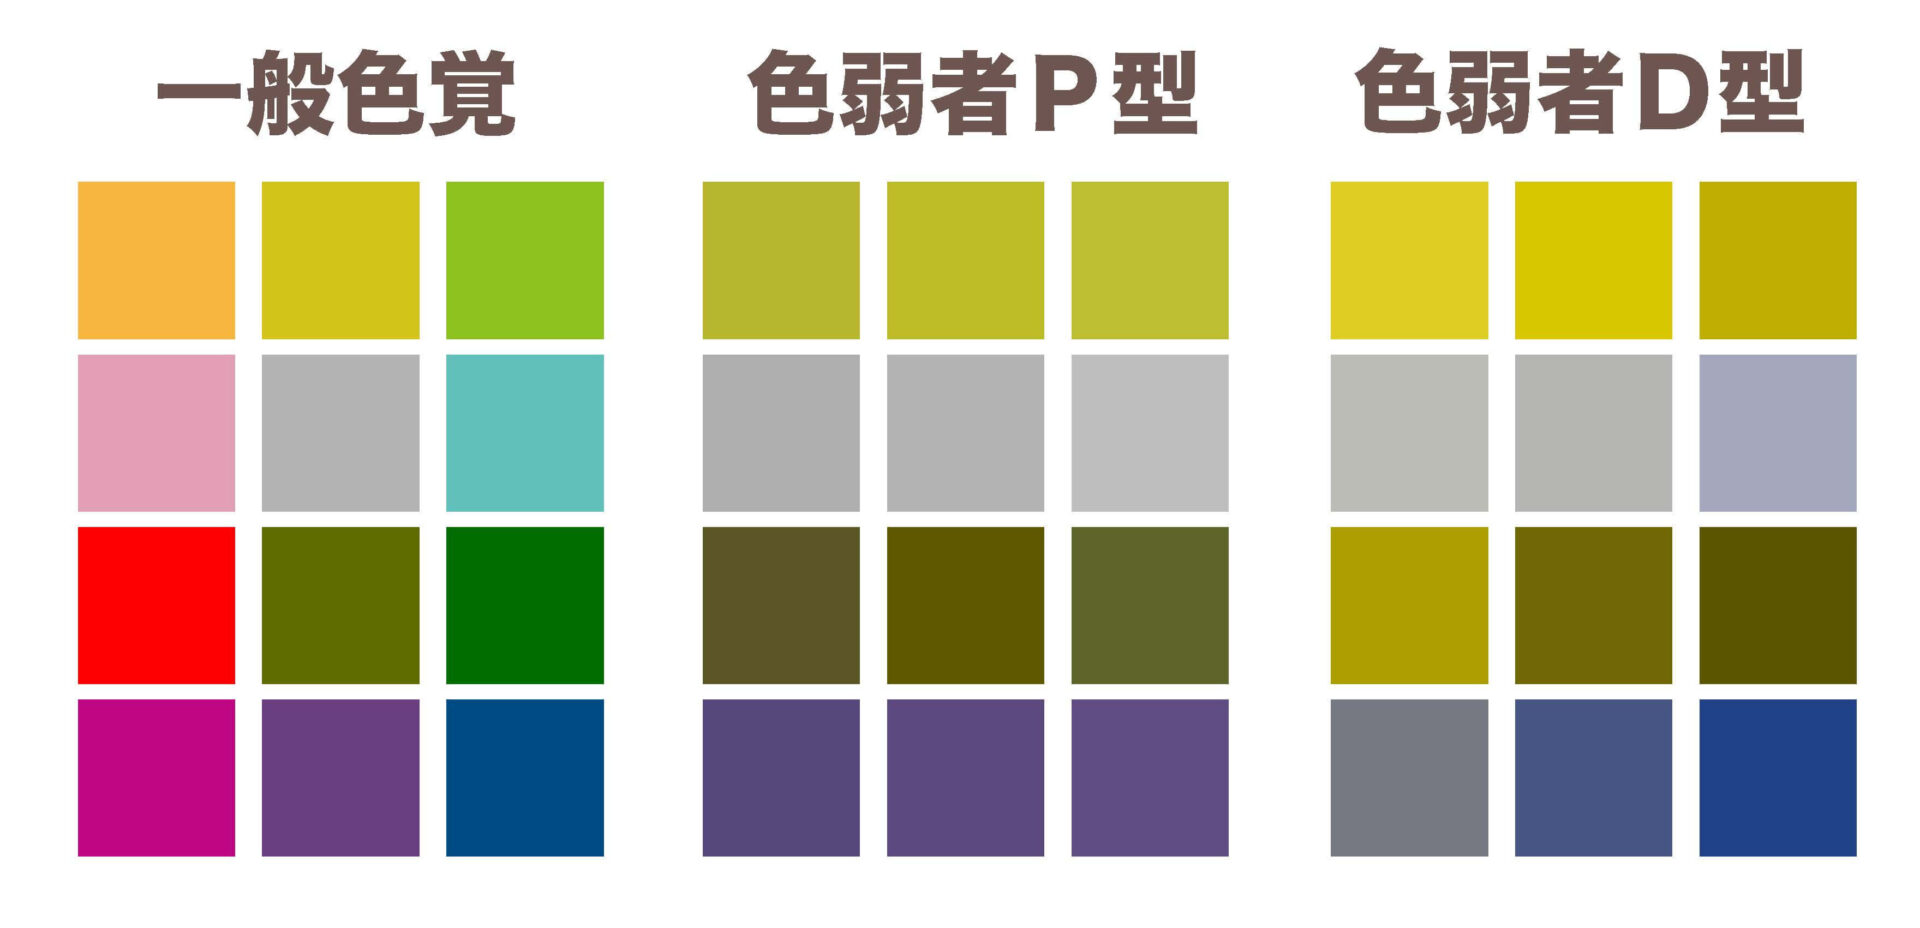 色覚のタイプによる色の見え方の違いをあらわした画像です。画像から、P型、D型は、赤と緑の色の区別が難しいことが分かります